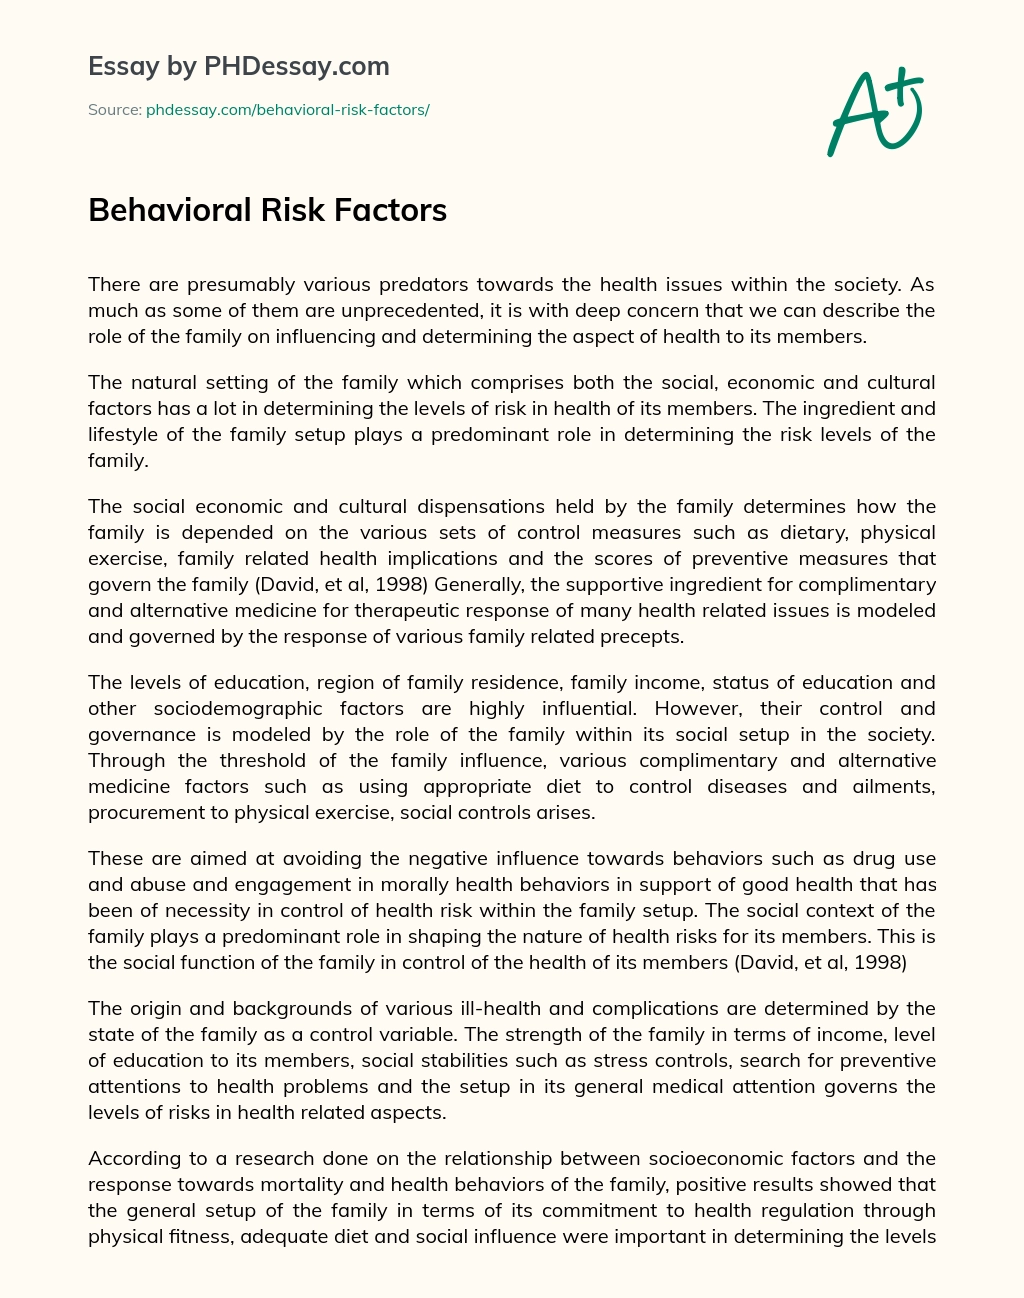 Behavioral Risk Factors essay